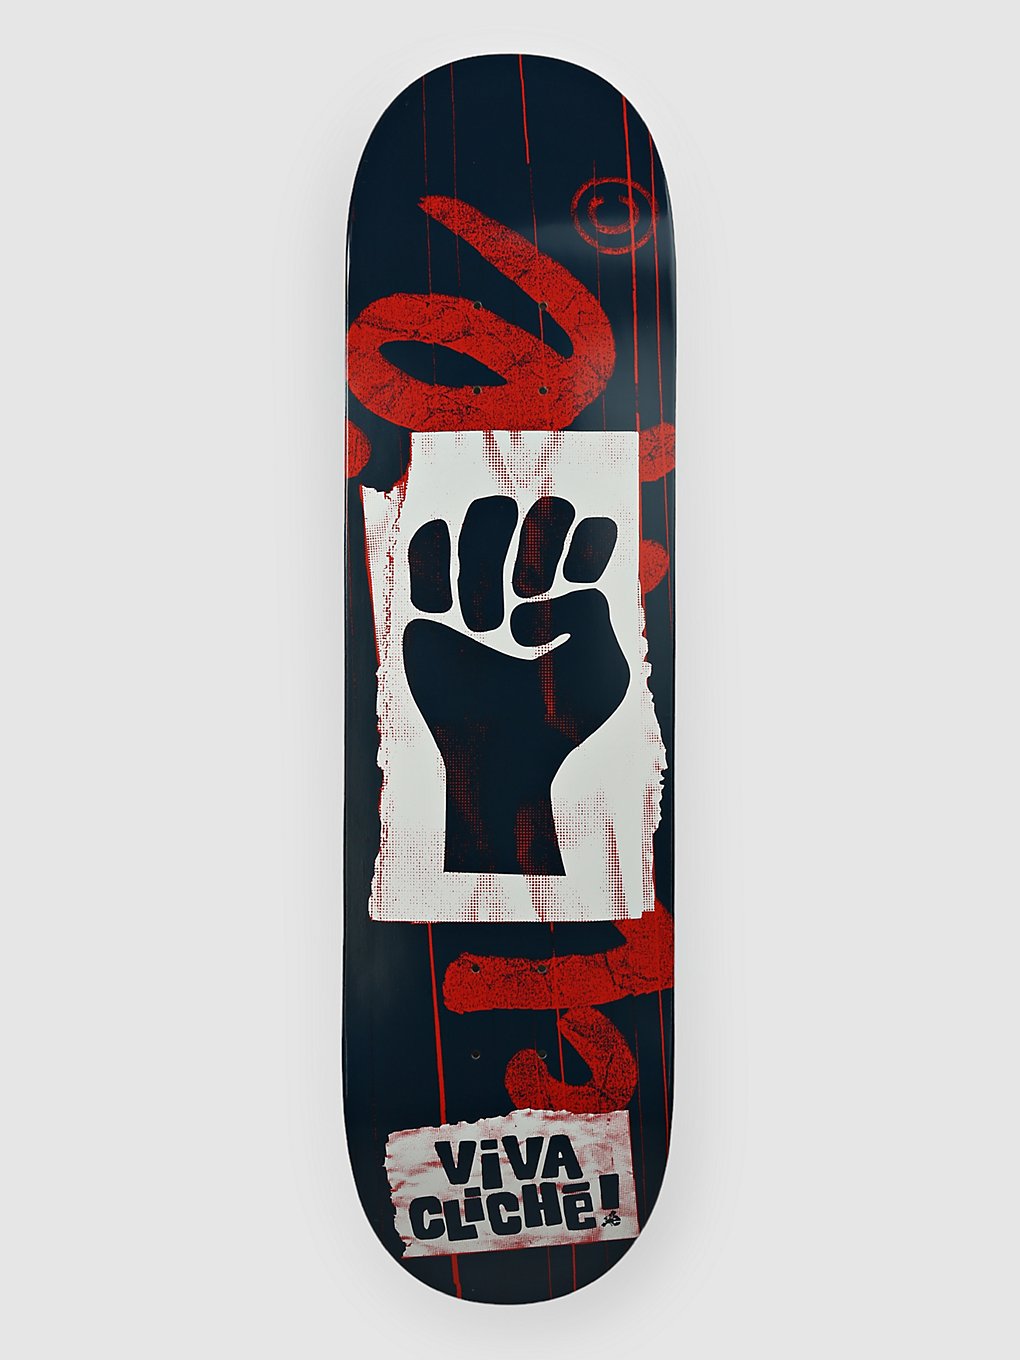 Cliché Viva Rhm 8.375" Skateboard Deck red kaufen